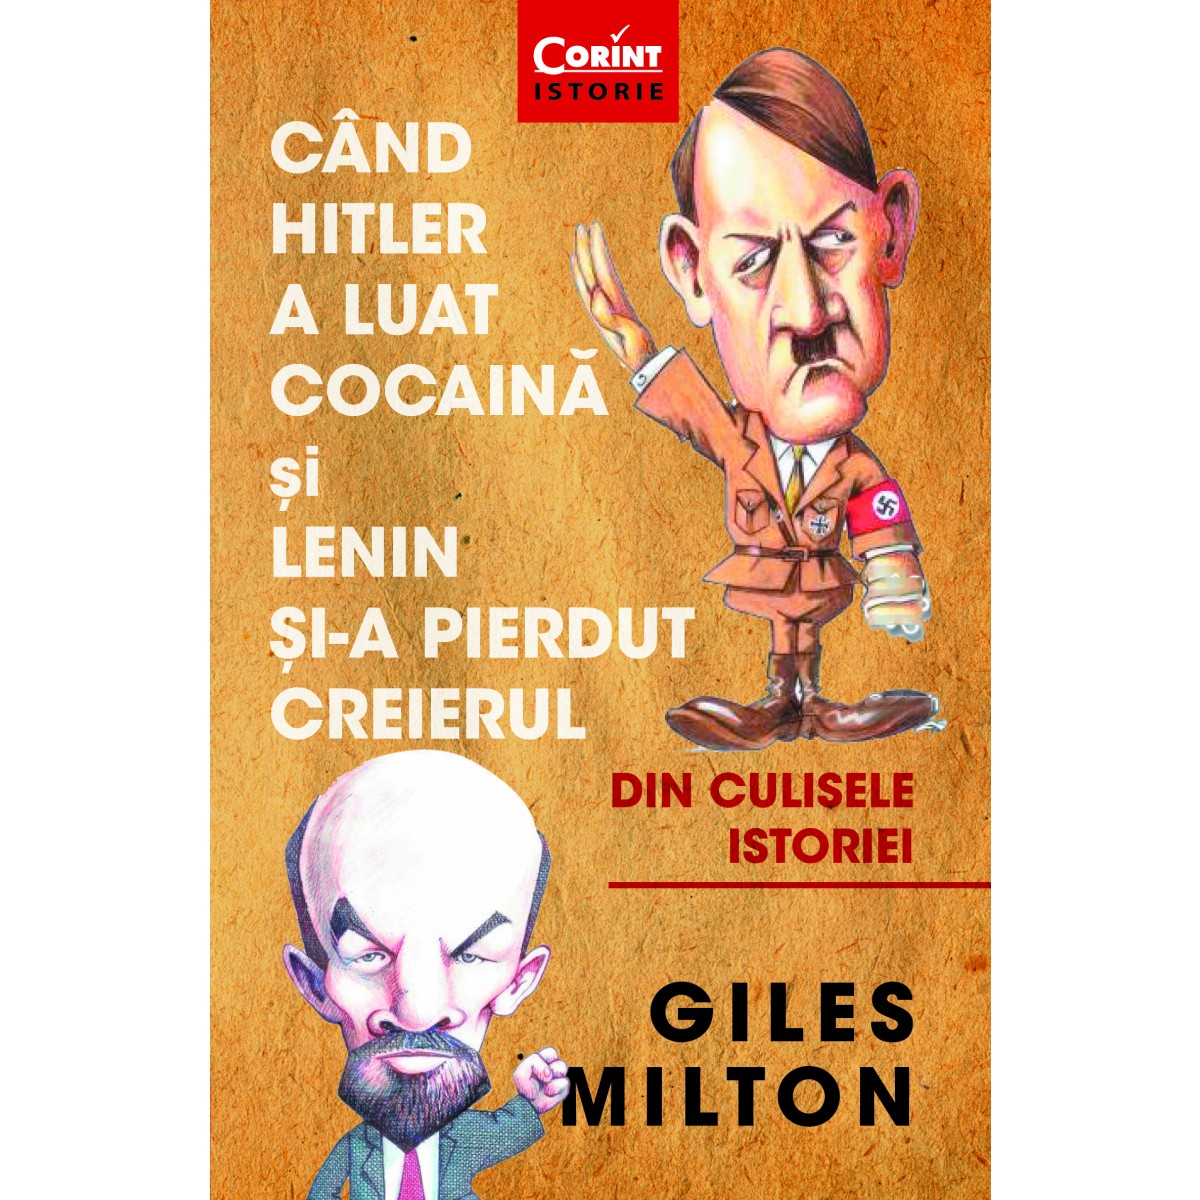 Cand Hitler a luat cocaina si Lenin si-a pierdut creierul | Giles Milton carturesti.ro